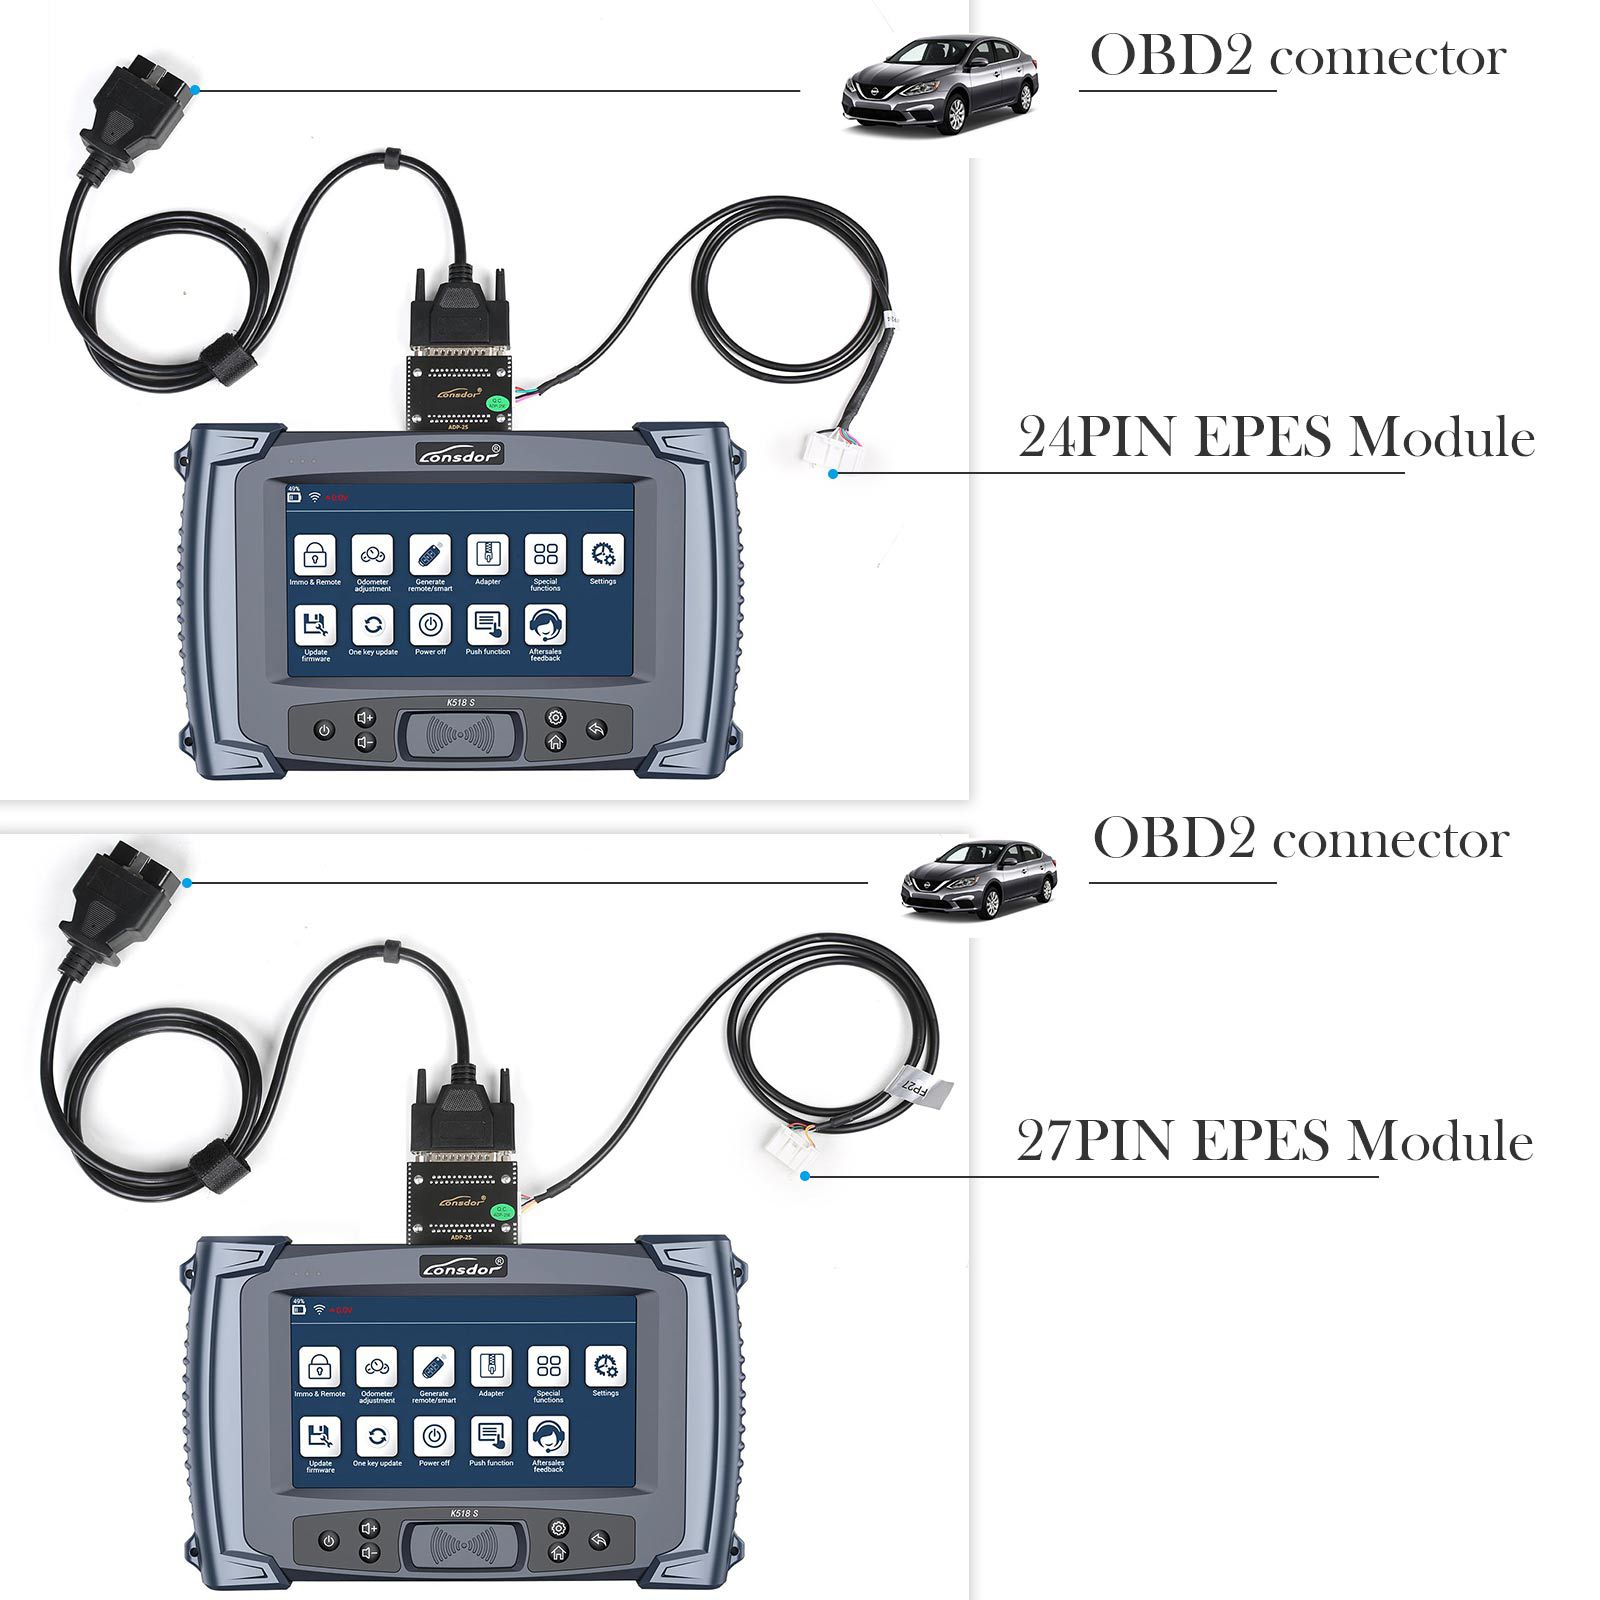 El conector lonsdor super ADP 8a / 4a para la programación de teclas de proximidad Toyota Lexus se utiliza con el lonsdor k518ise k518s